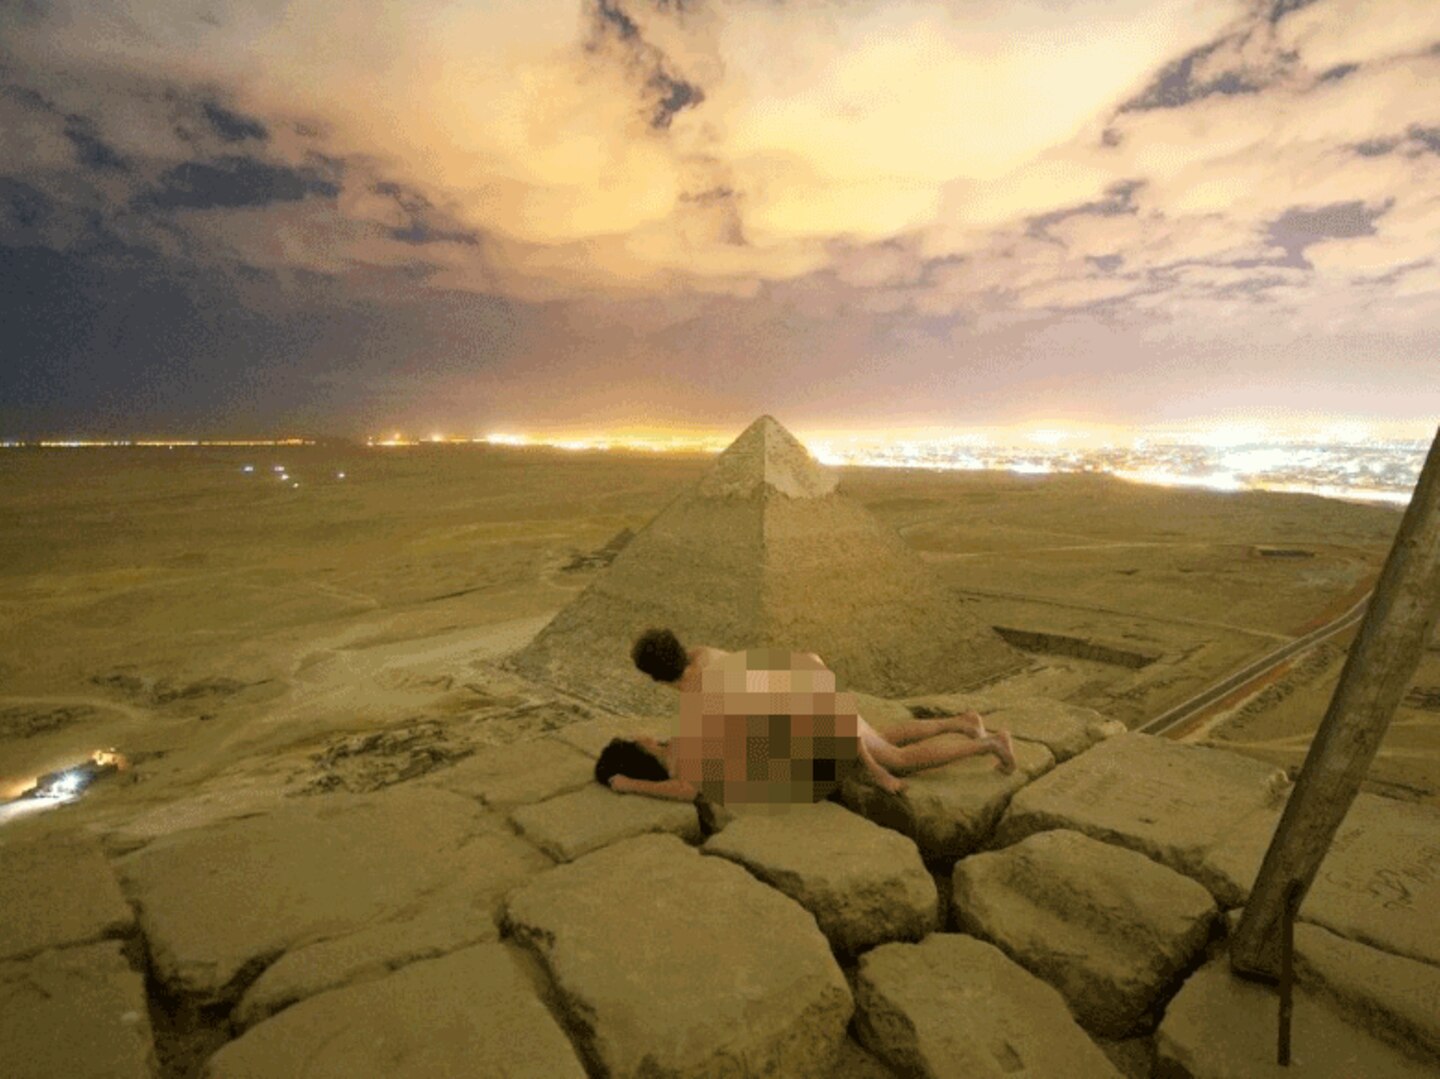 Bild der frau kreativ in El Giza